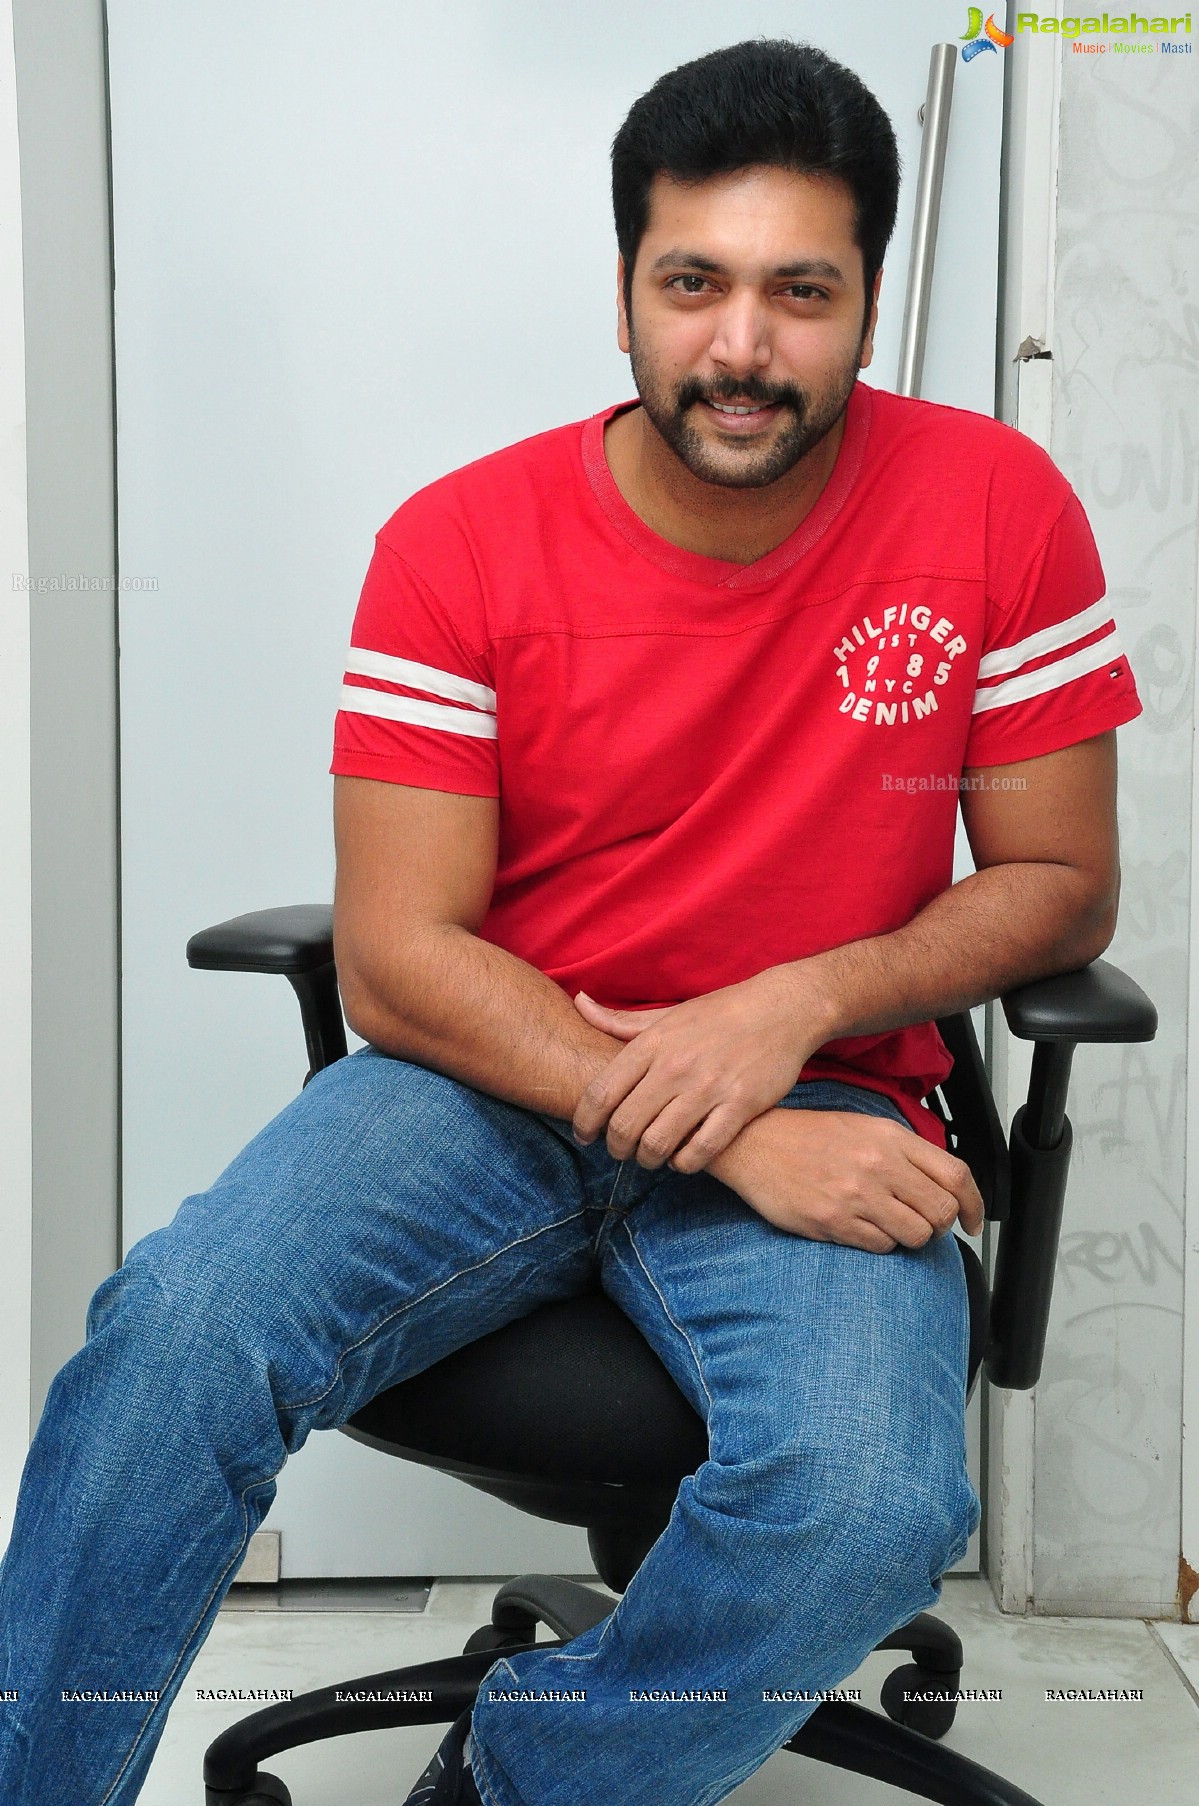 Jayam Ravi